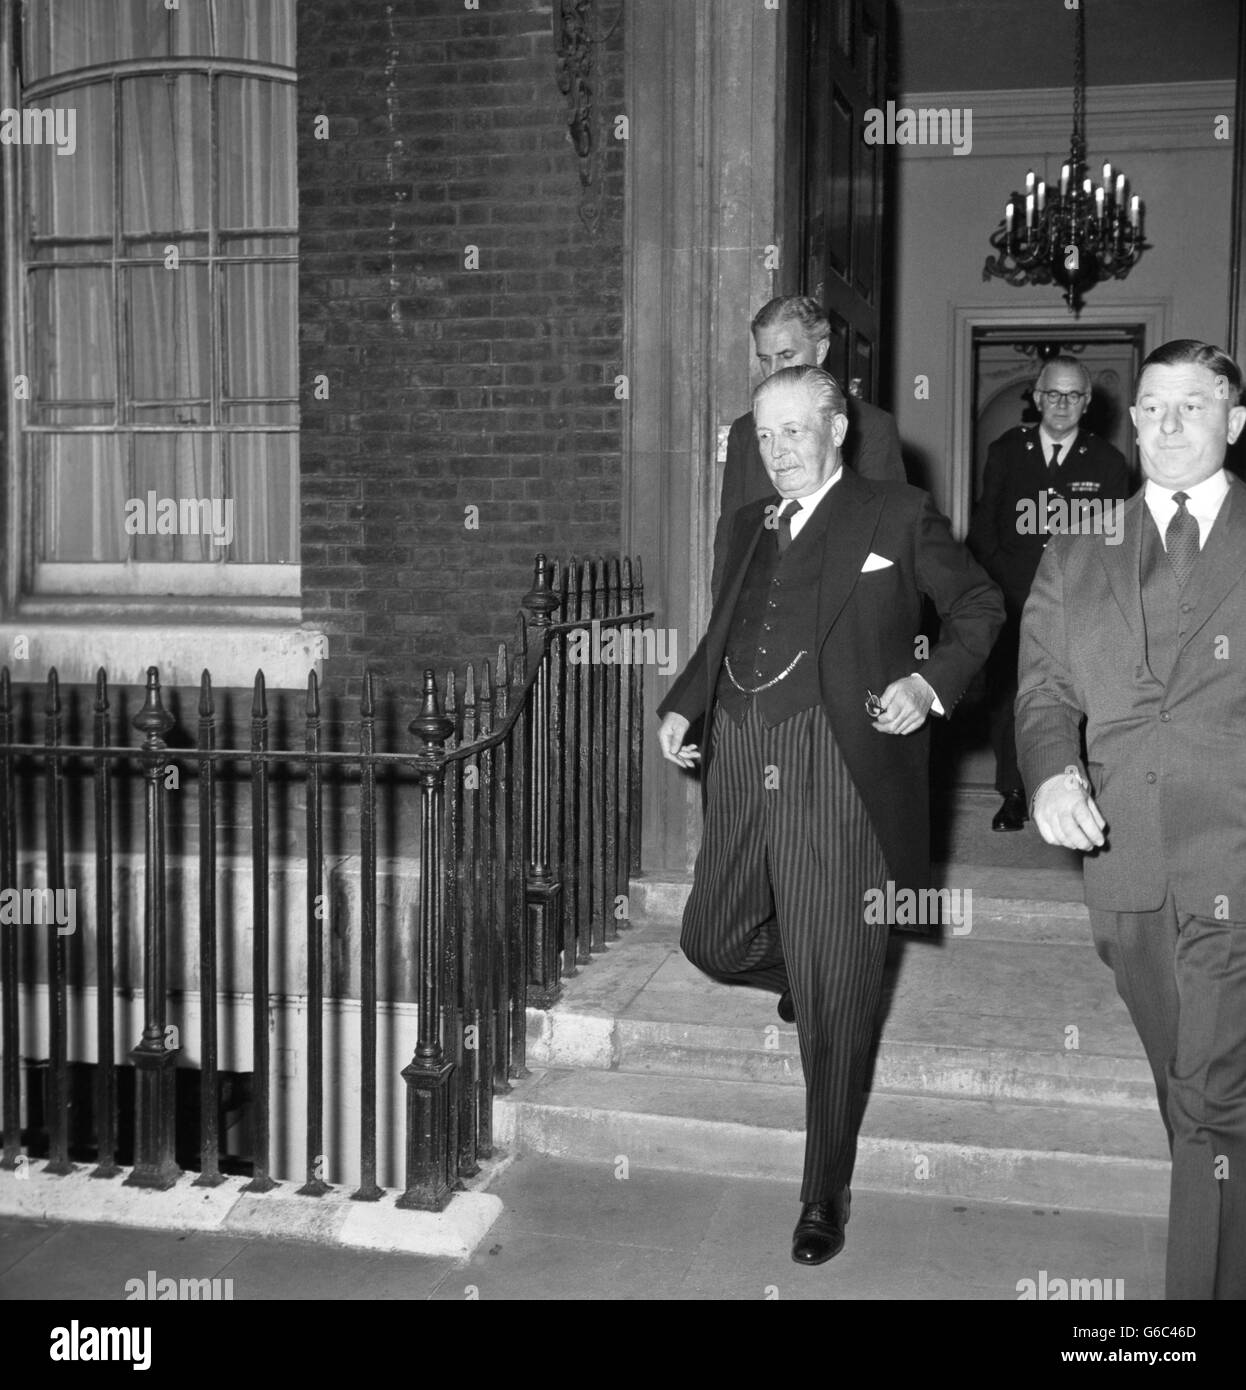 Politique - affaire Profumo - Le premier ministre Harold Macmillan - Admiralty House, Londres Banque D'Images